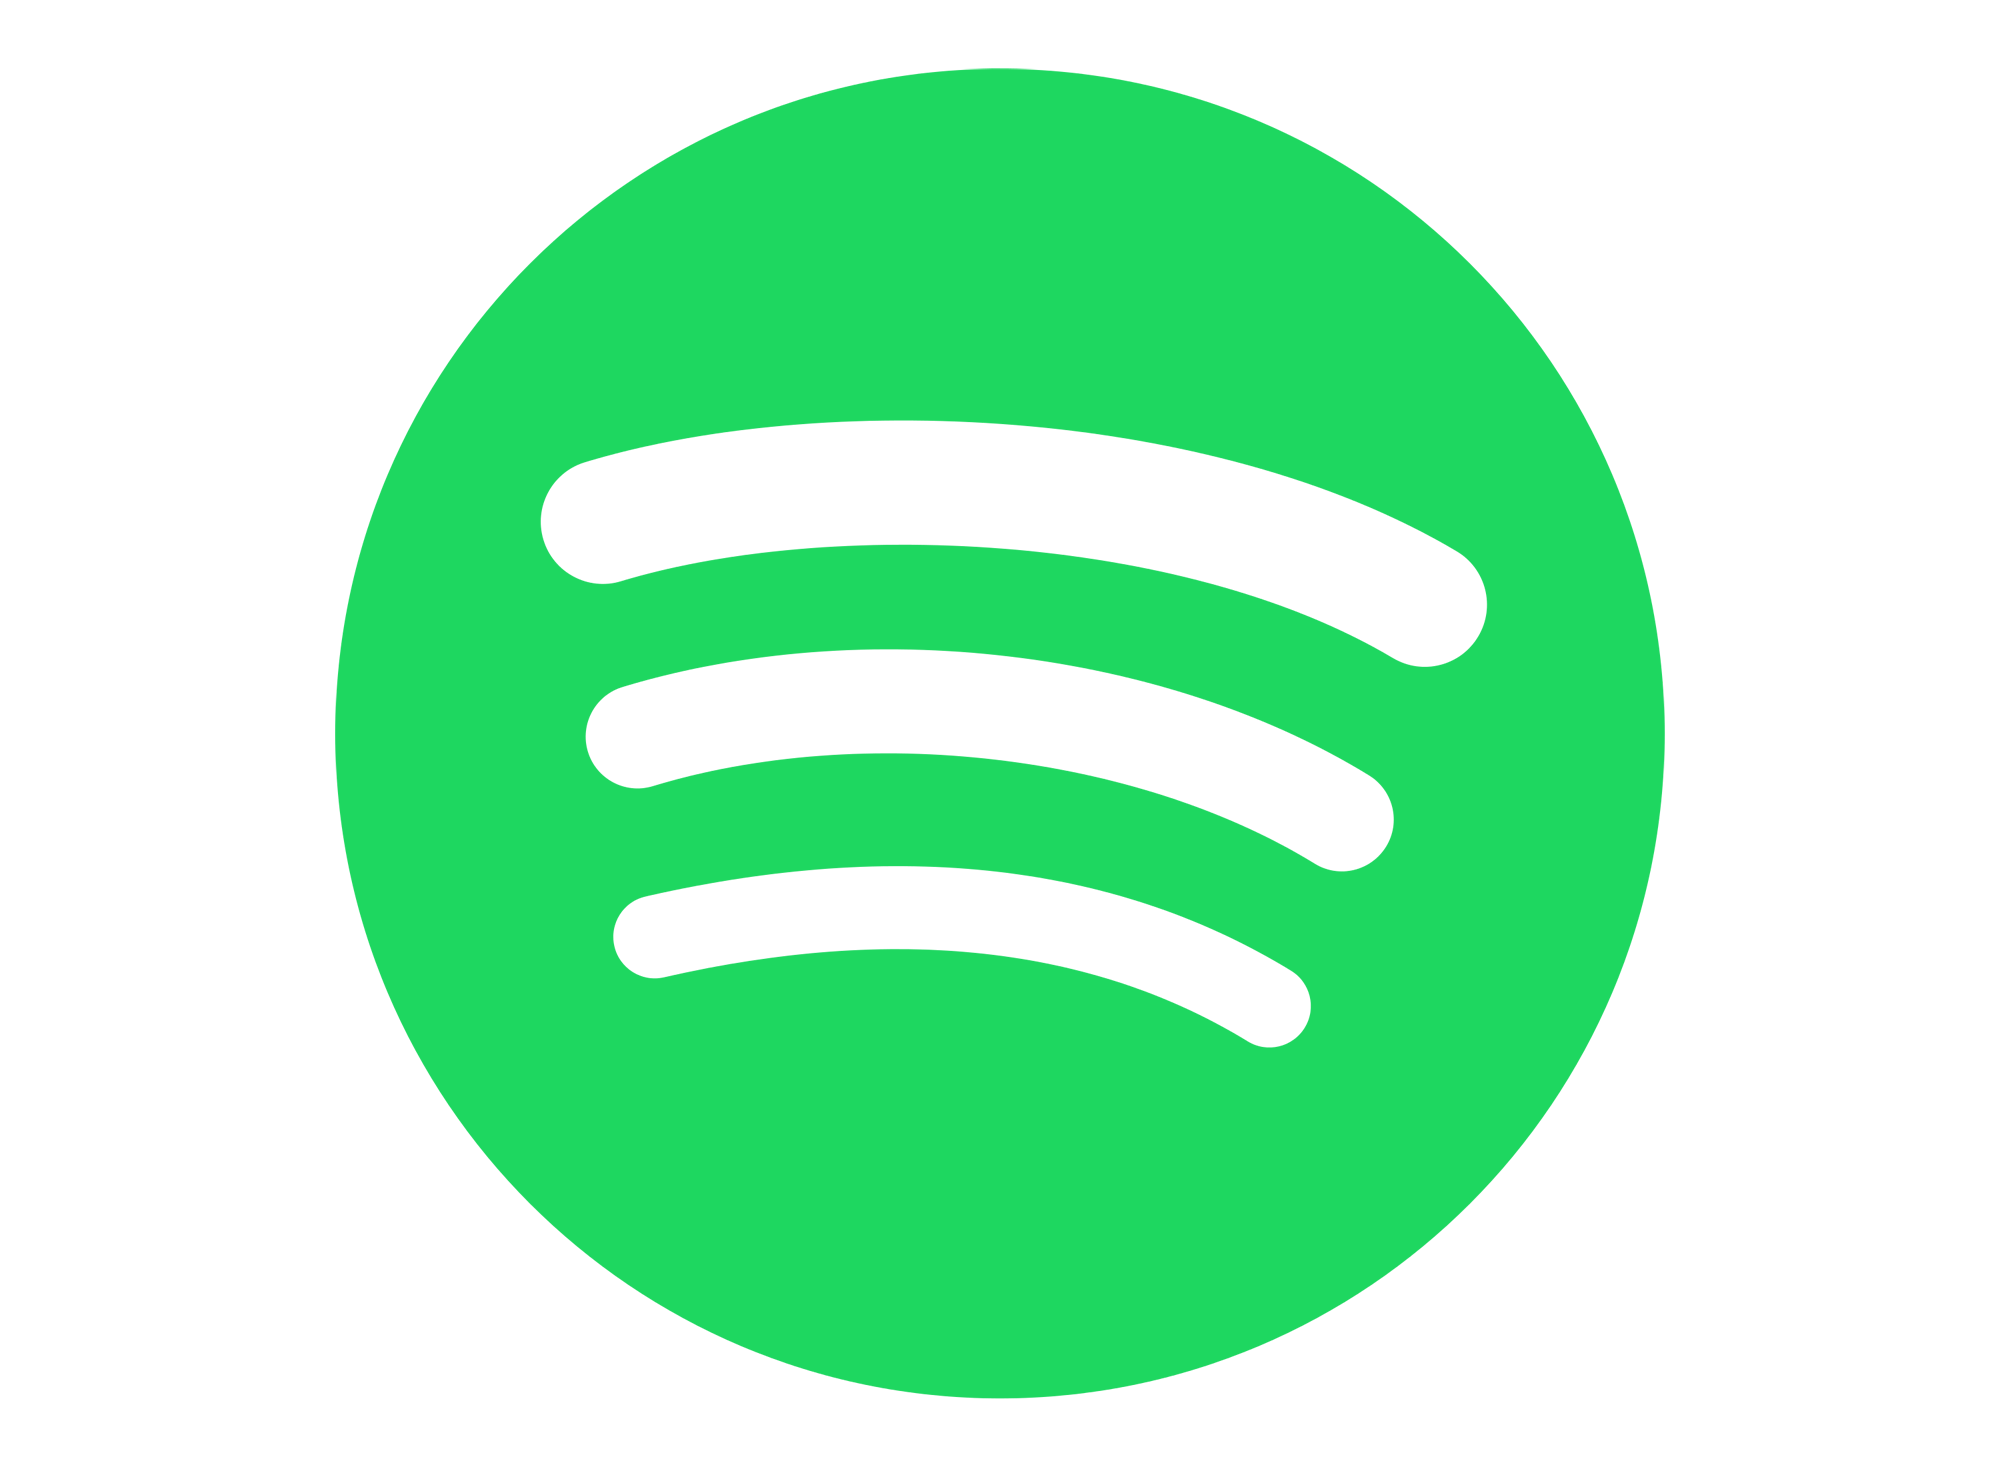 Spotify-Logo.png